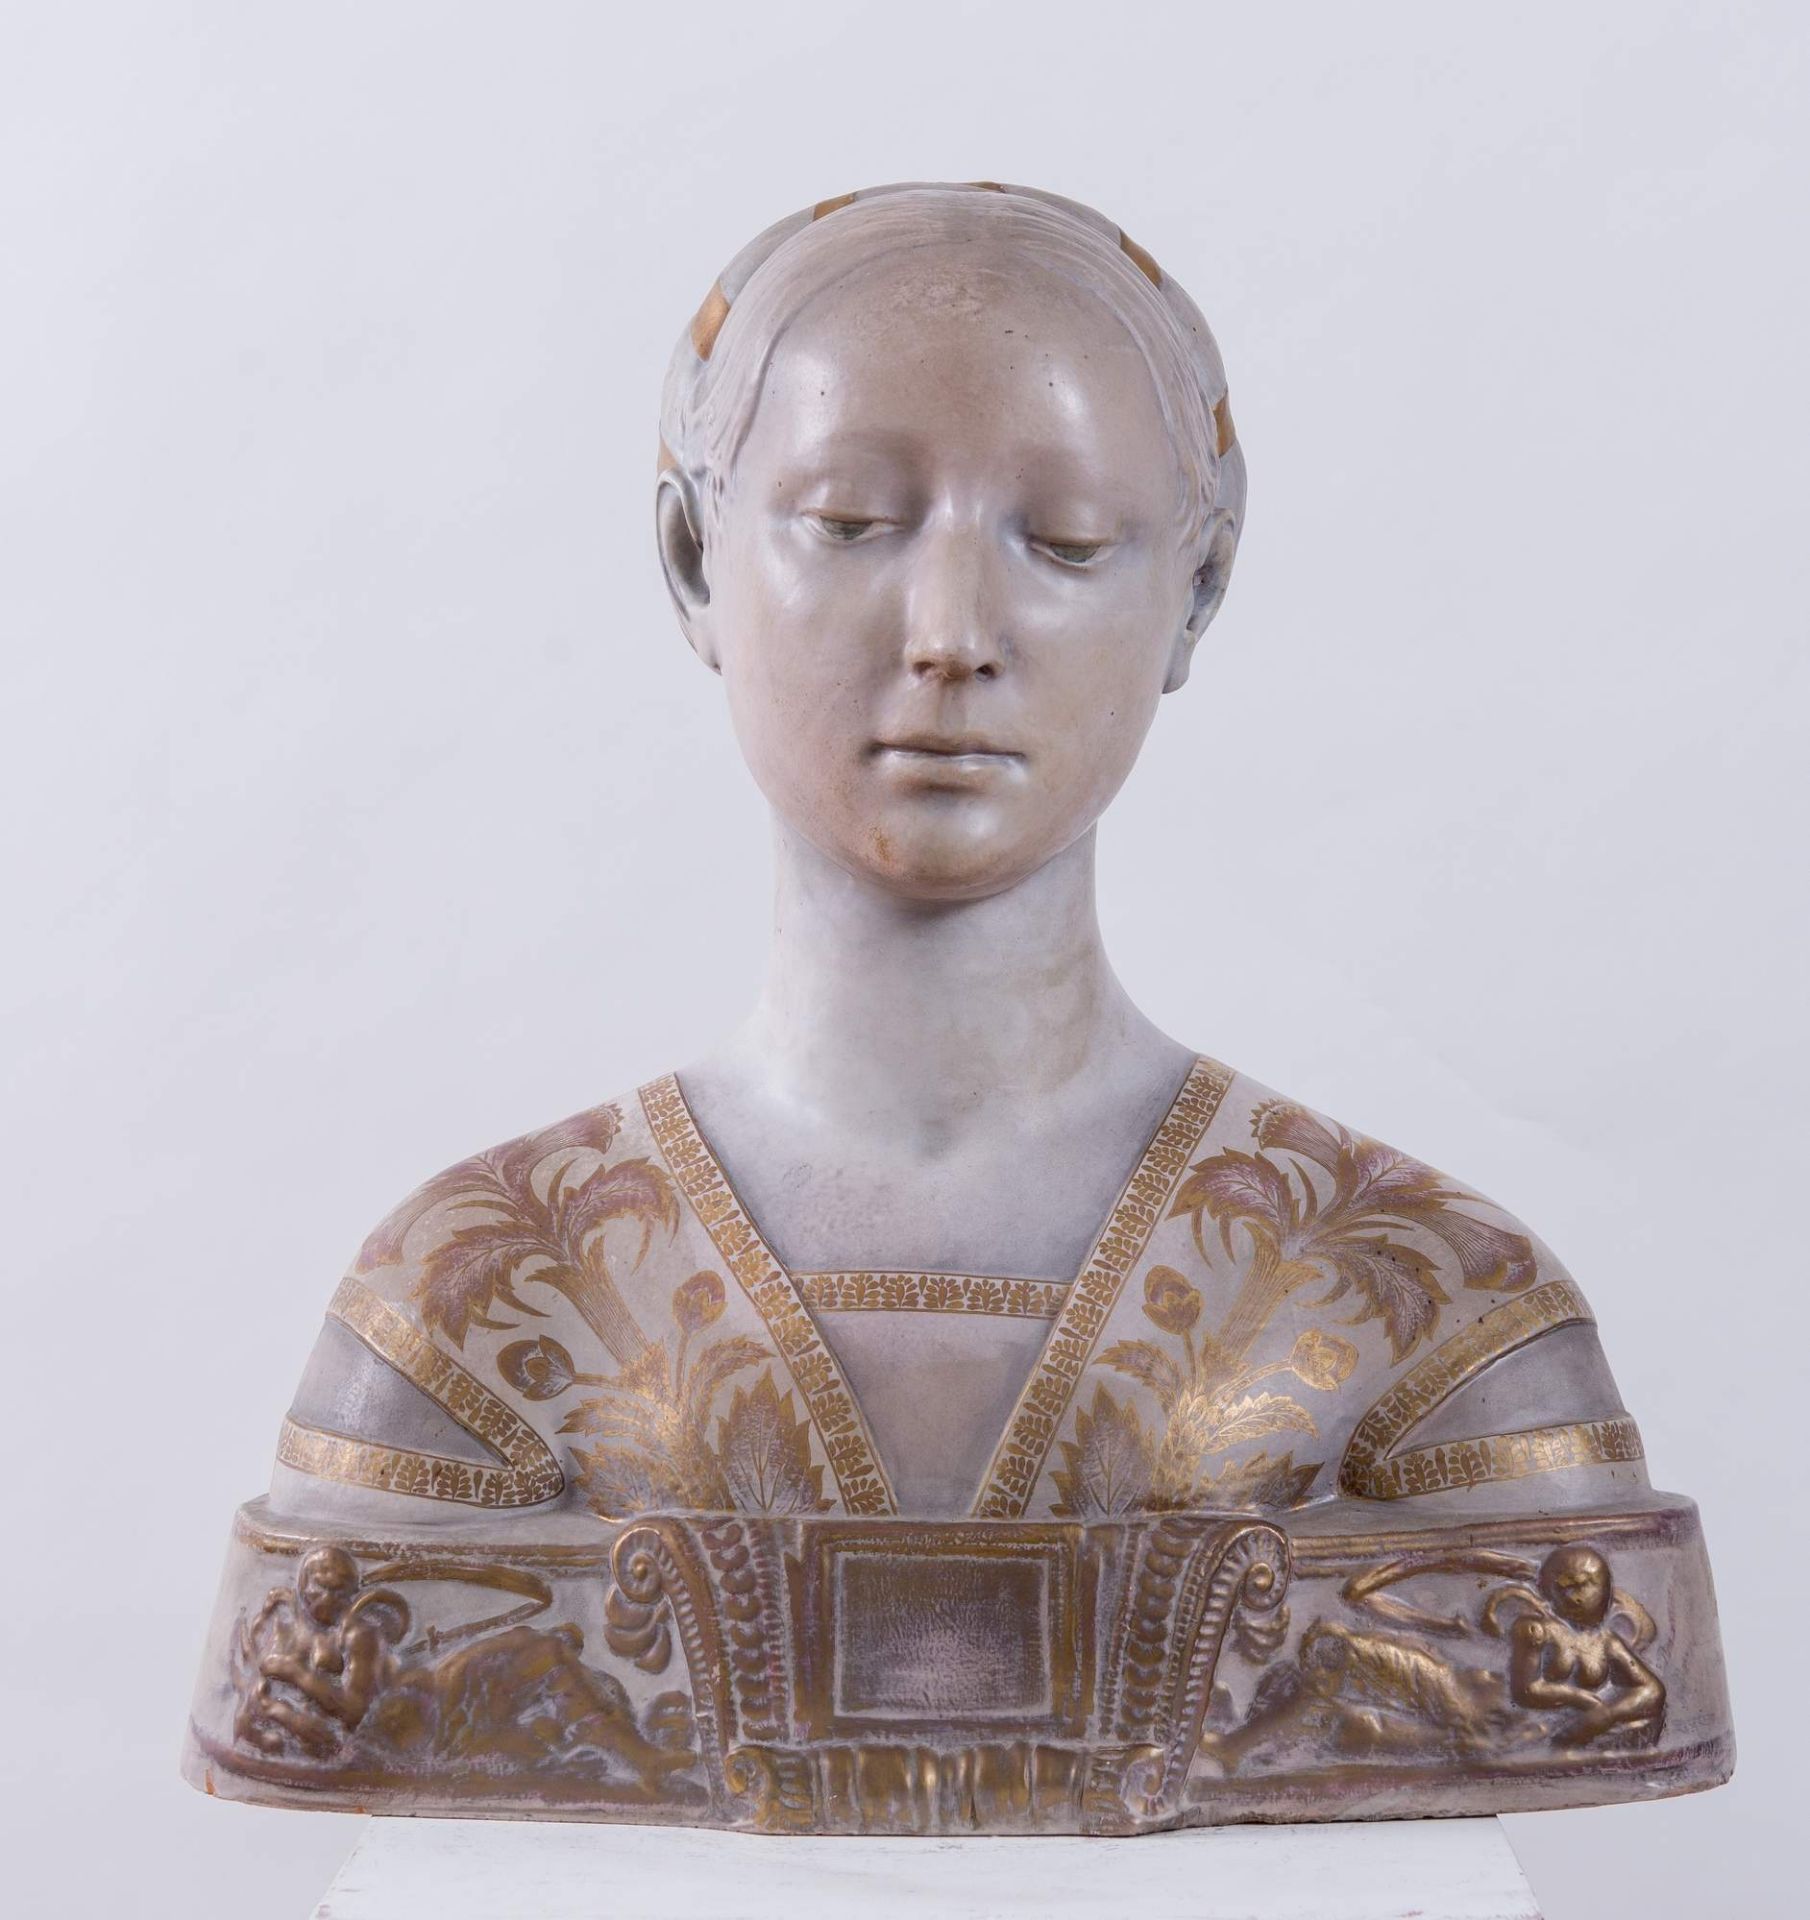 PIETRO MELANDRI (Faenza 1885 - 1976) “Busto di fanciulla”. Scultura in ceramica policroma. Cm